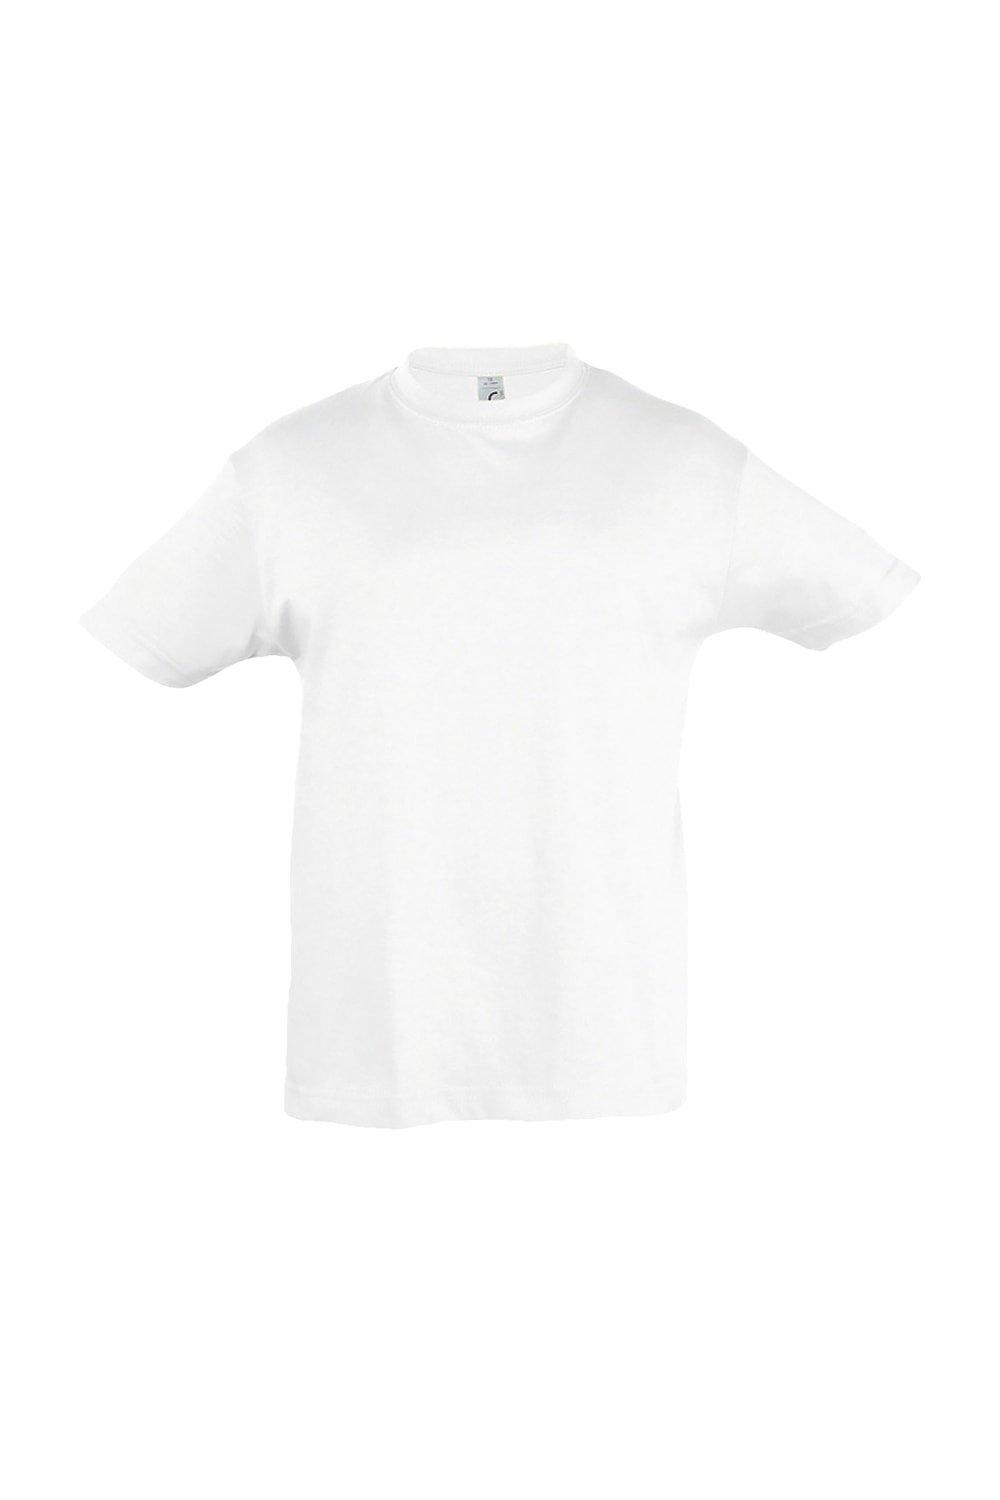 Regent Short Sleeve T-Shirt